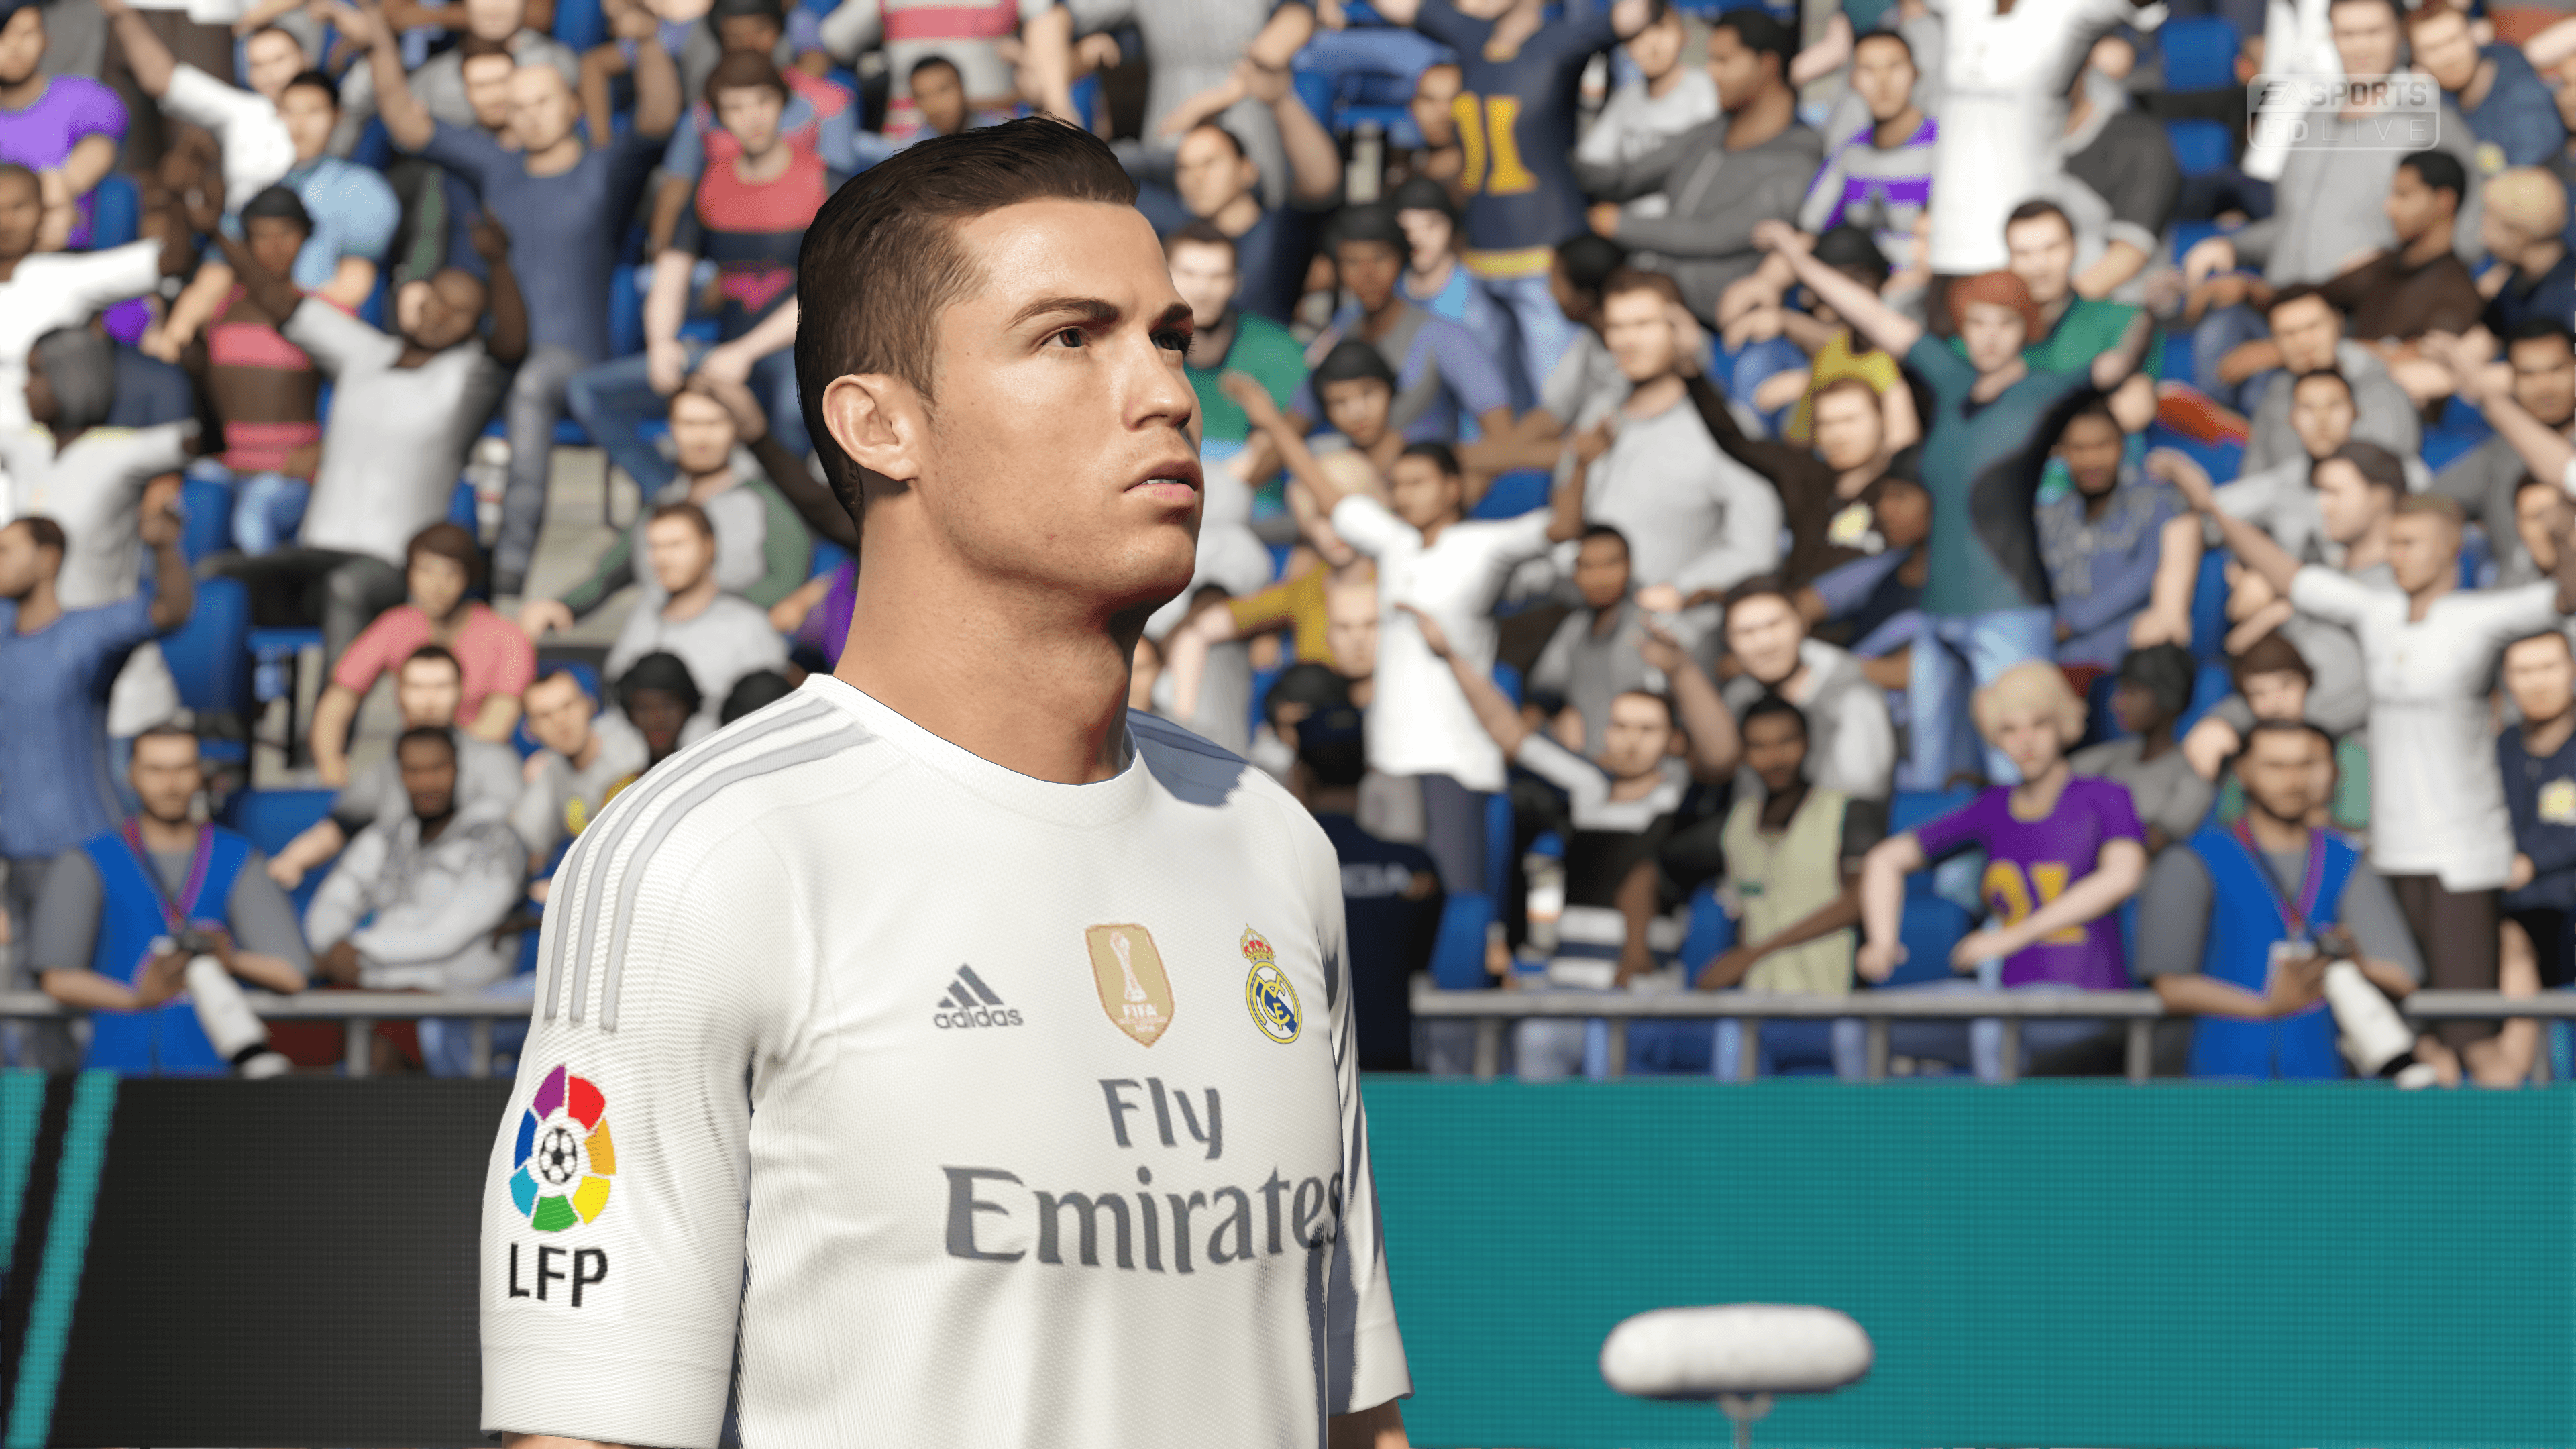 Cristiano Ronaldo, Footballers, Video Games, Ball, Soccer, FIFA 16